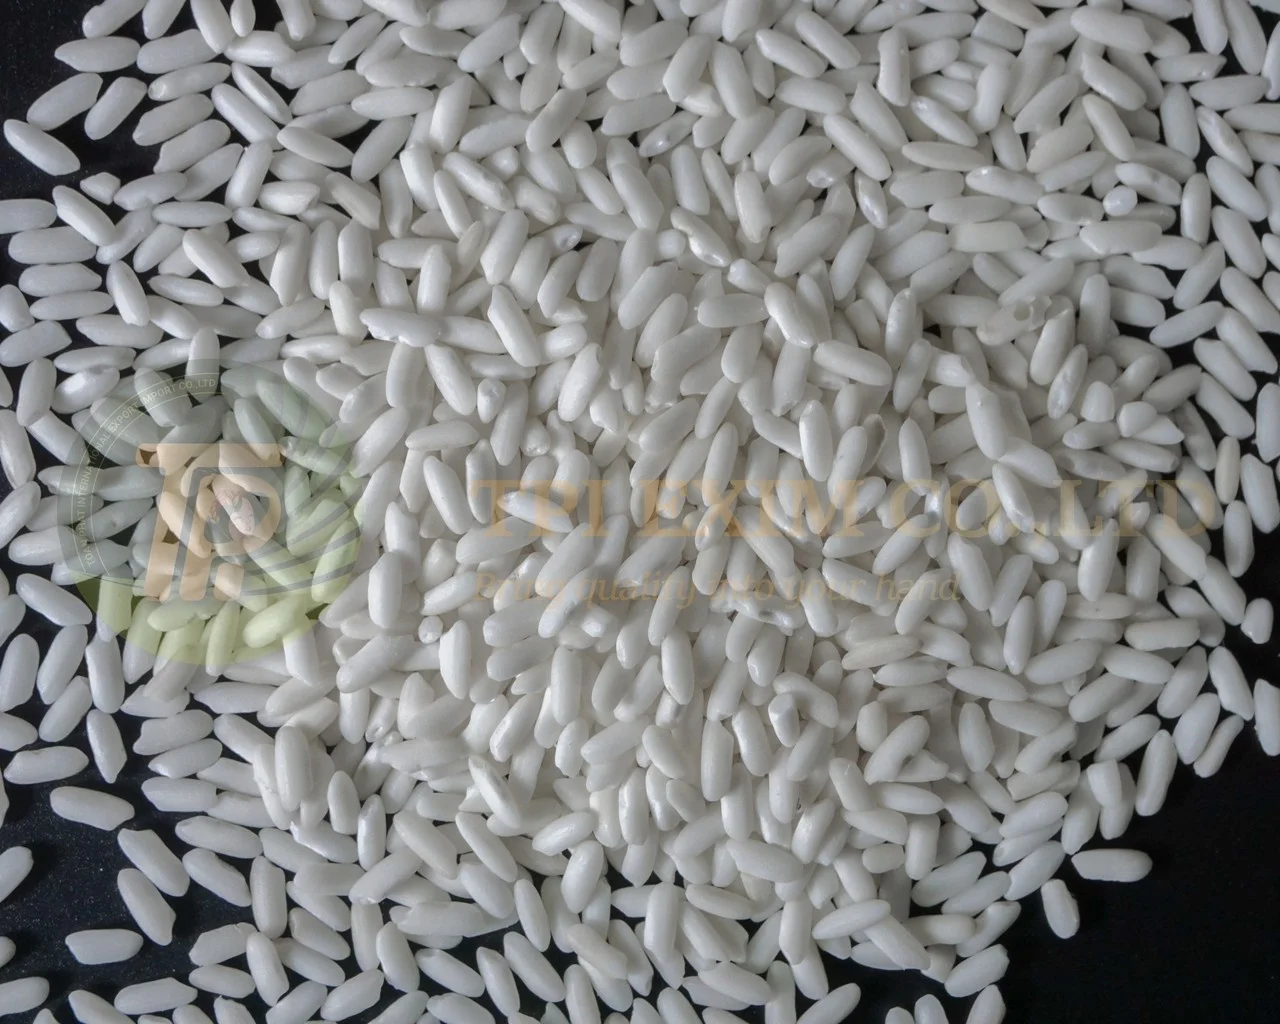 Натуральный клейкий средний рис высшего сорта по низким ценам от вьетнамских экспортеров, лучшее качество, оптовые поставщики